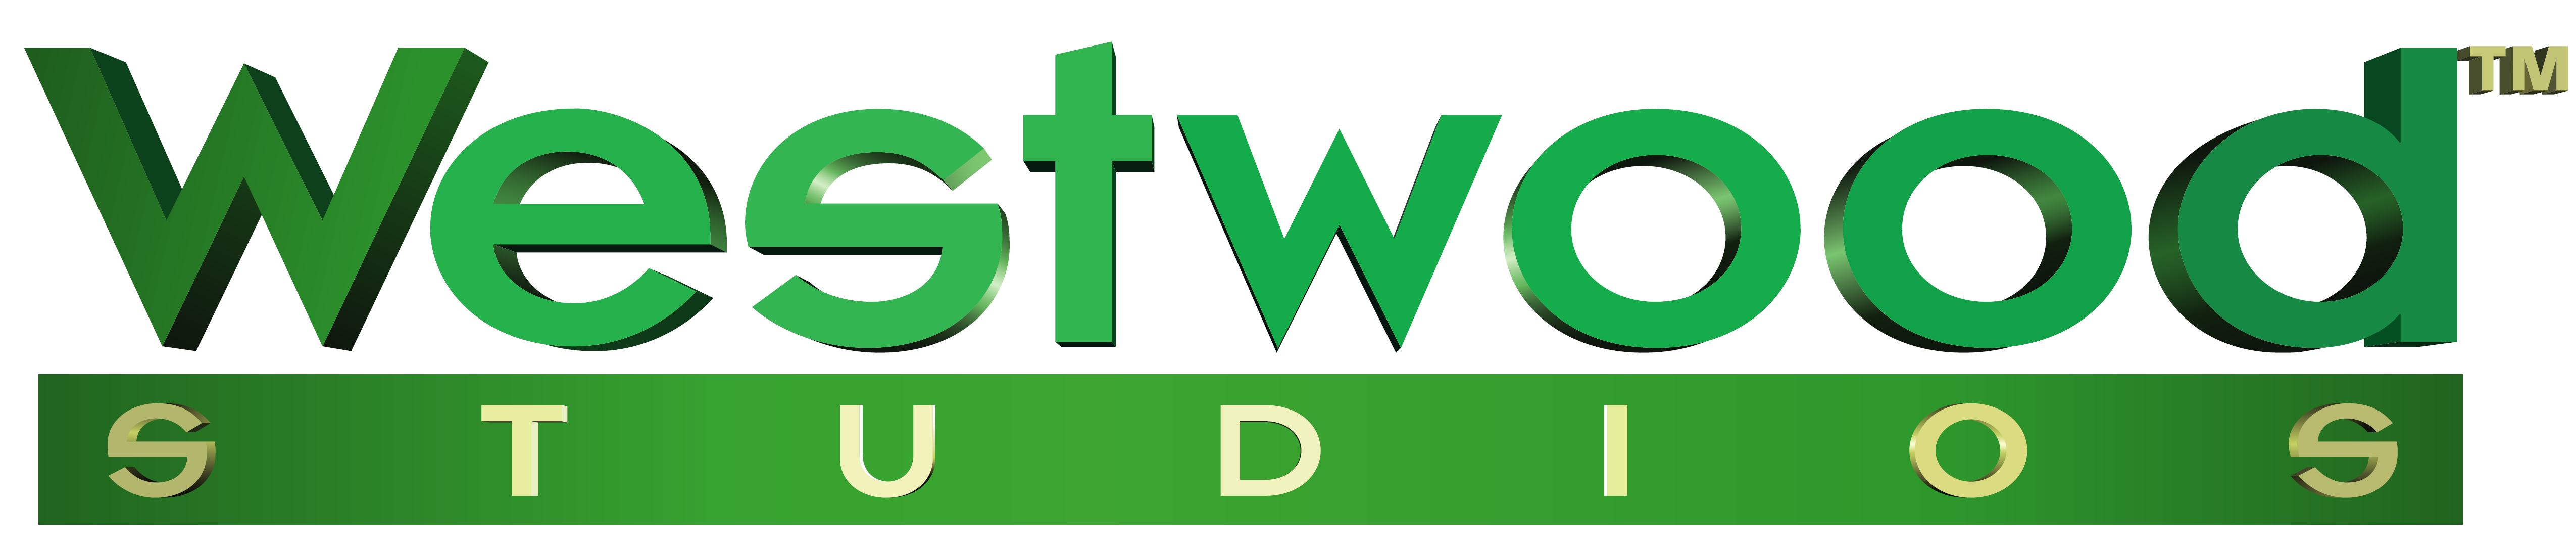 westwood_logo_huge.png